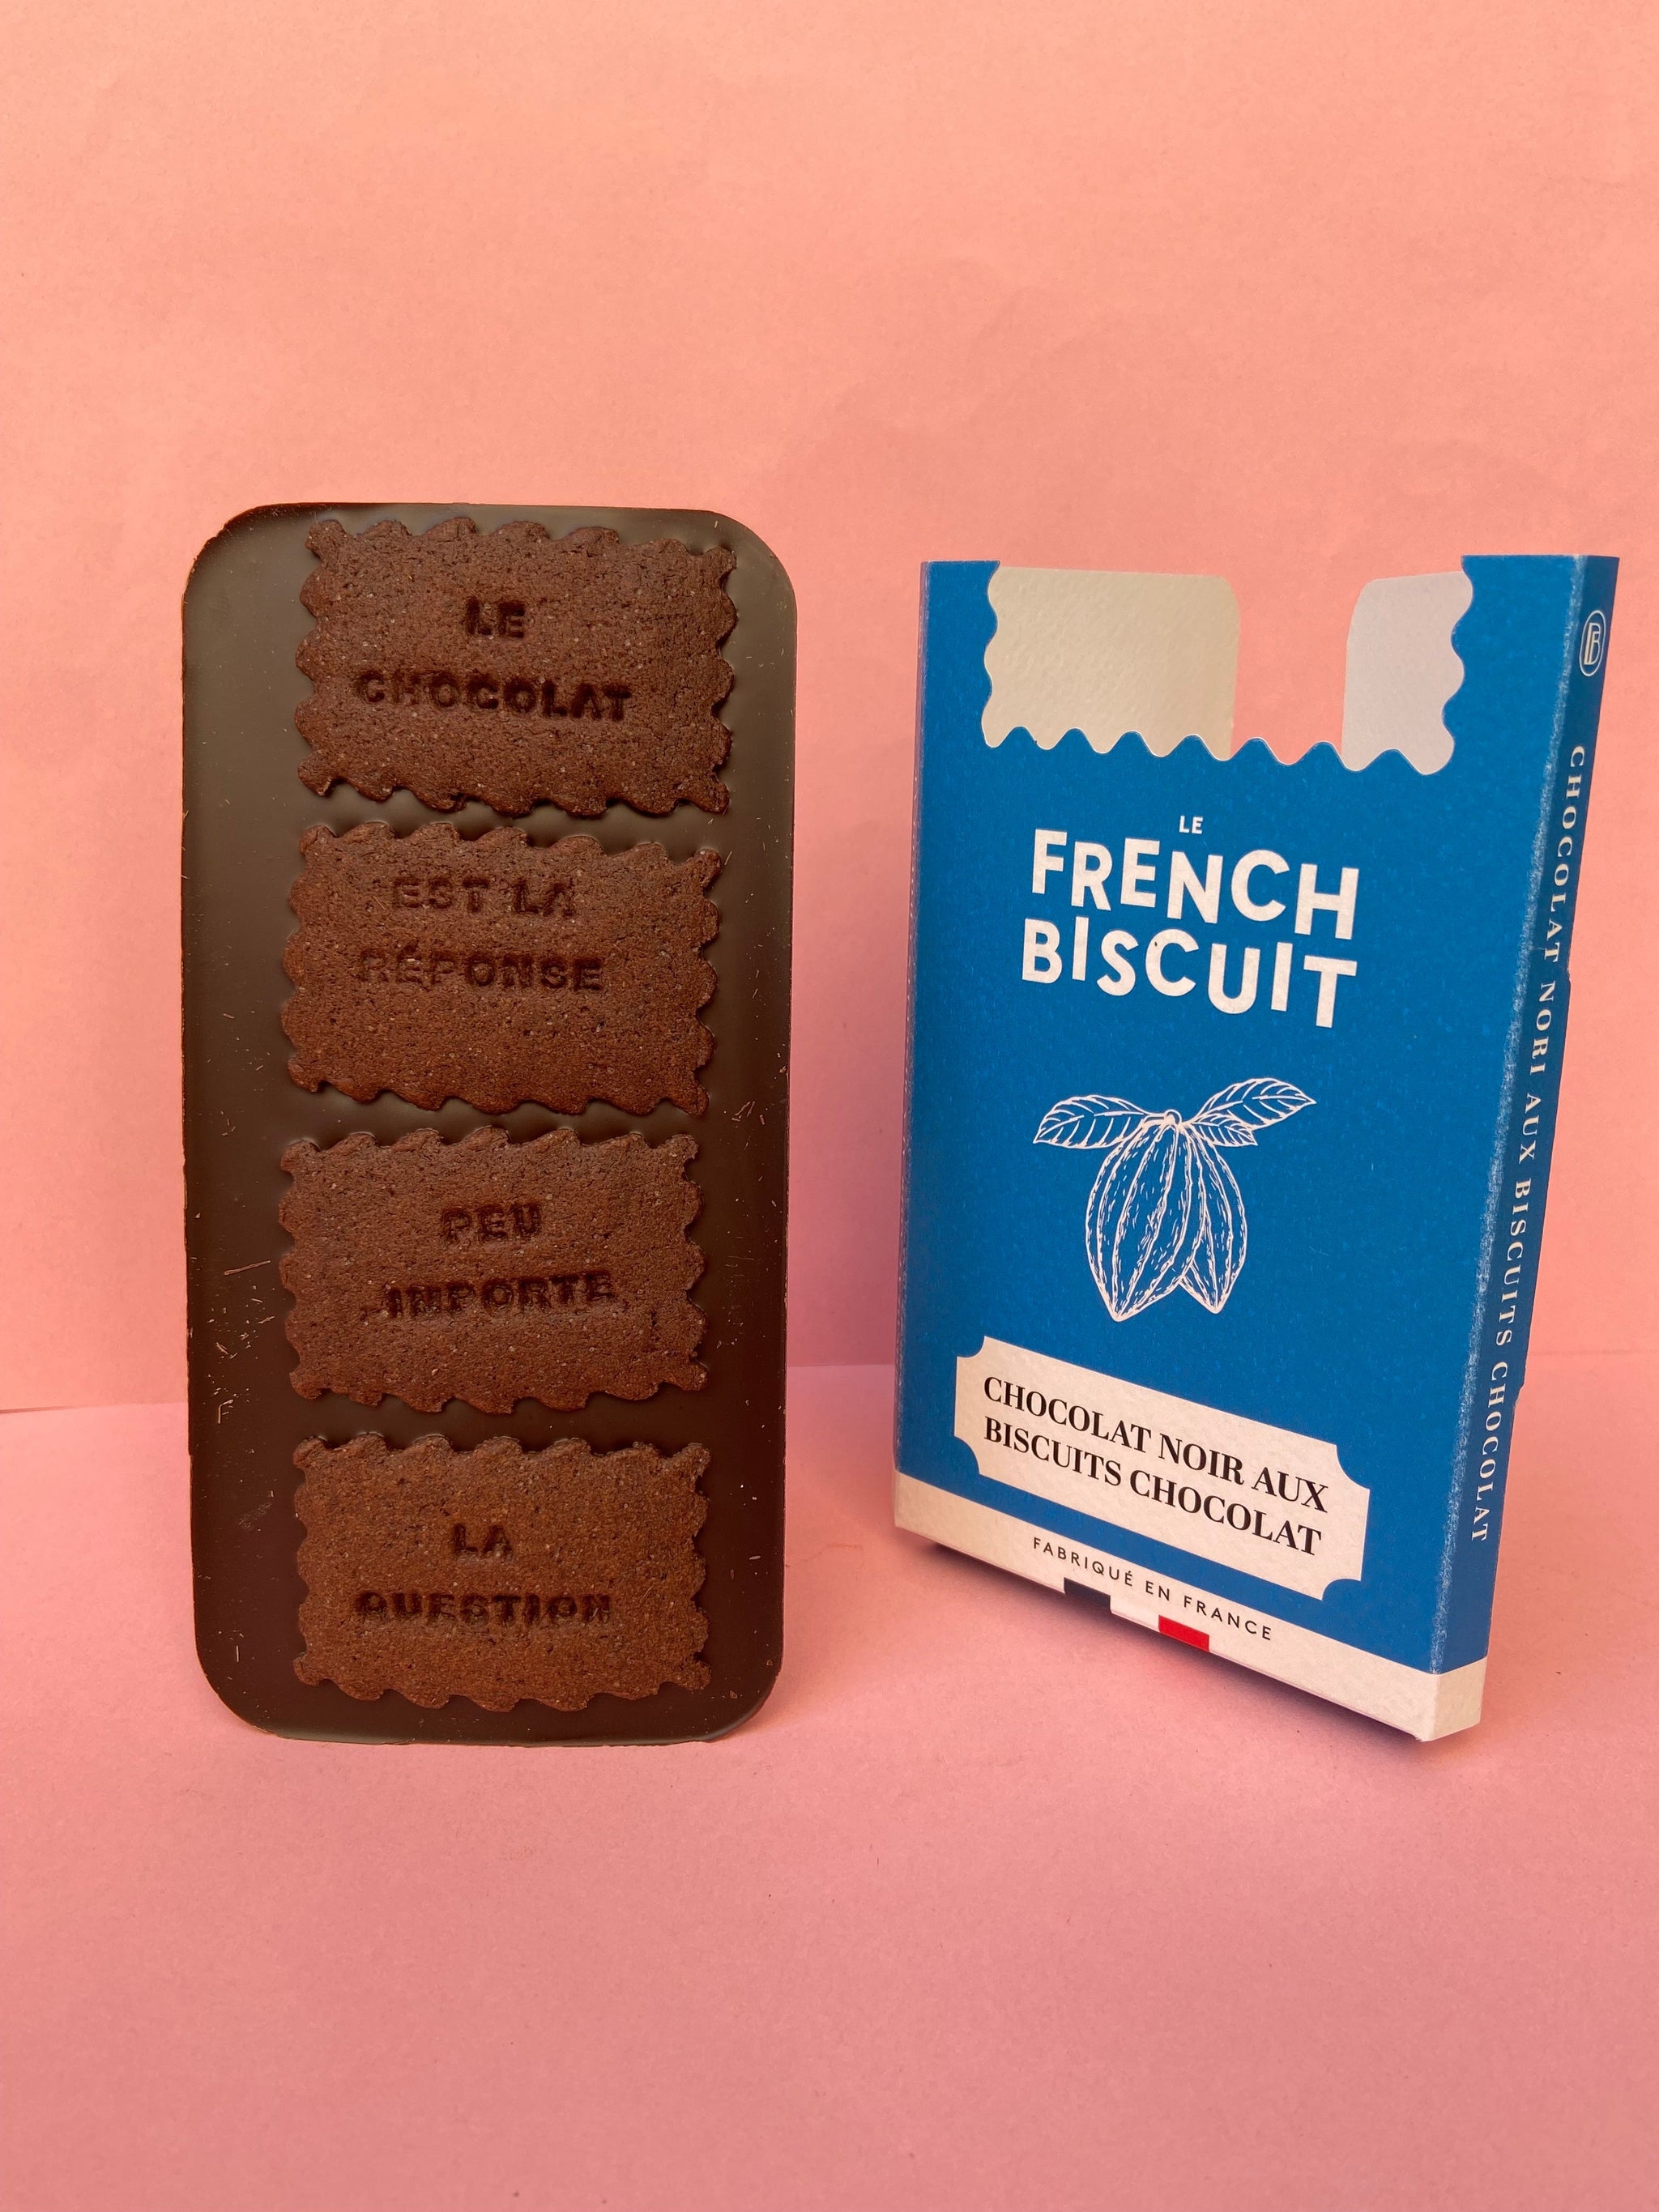 tablette de chocolat biscuits au chocolat cacao made in france biscuits messages cadeaux Pâques idée cadeaux Pâques